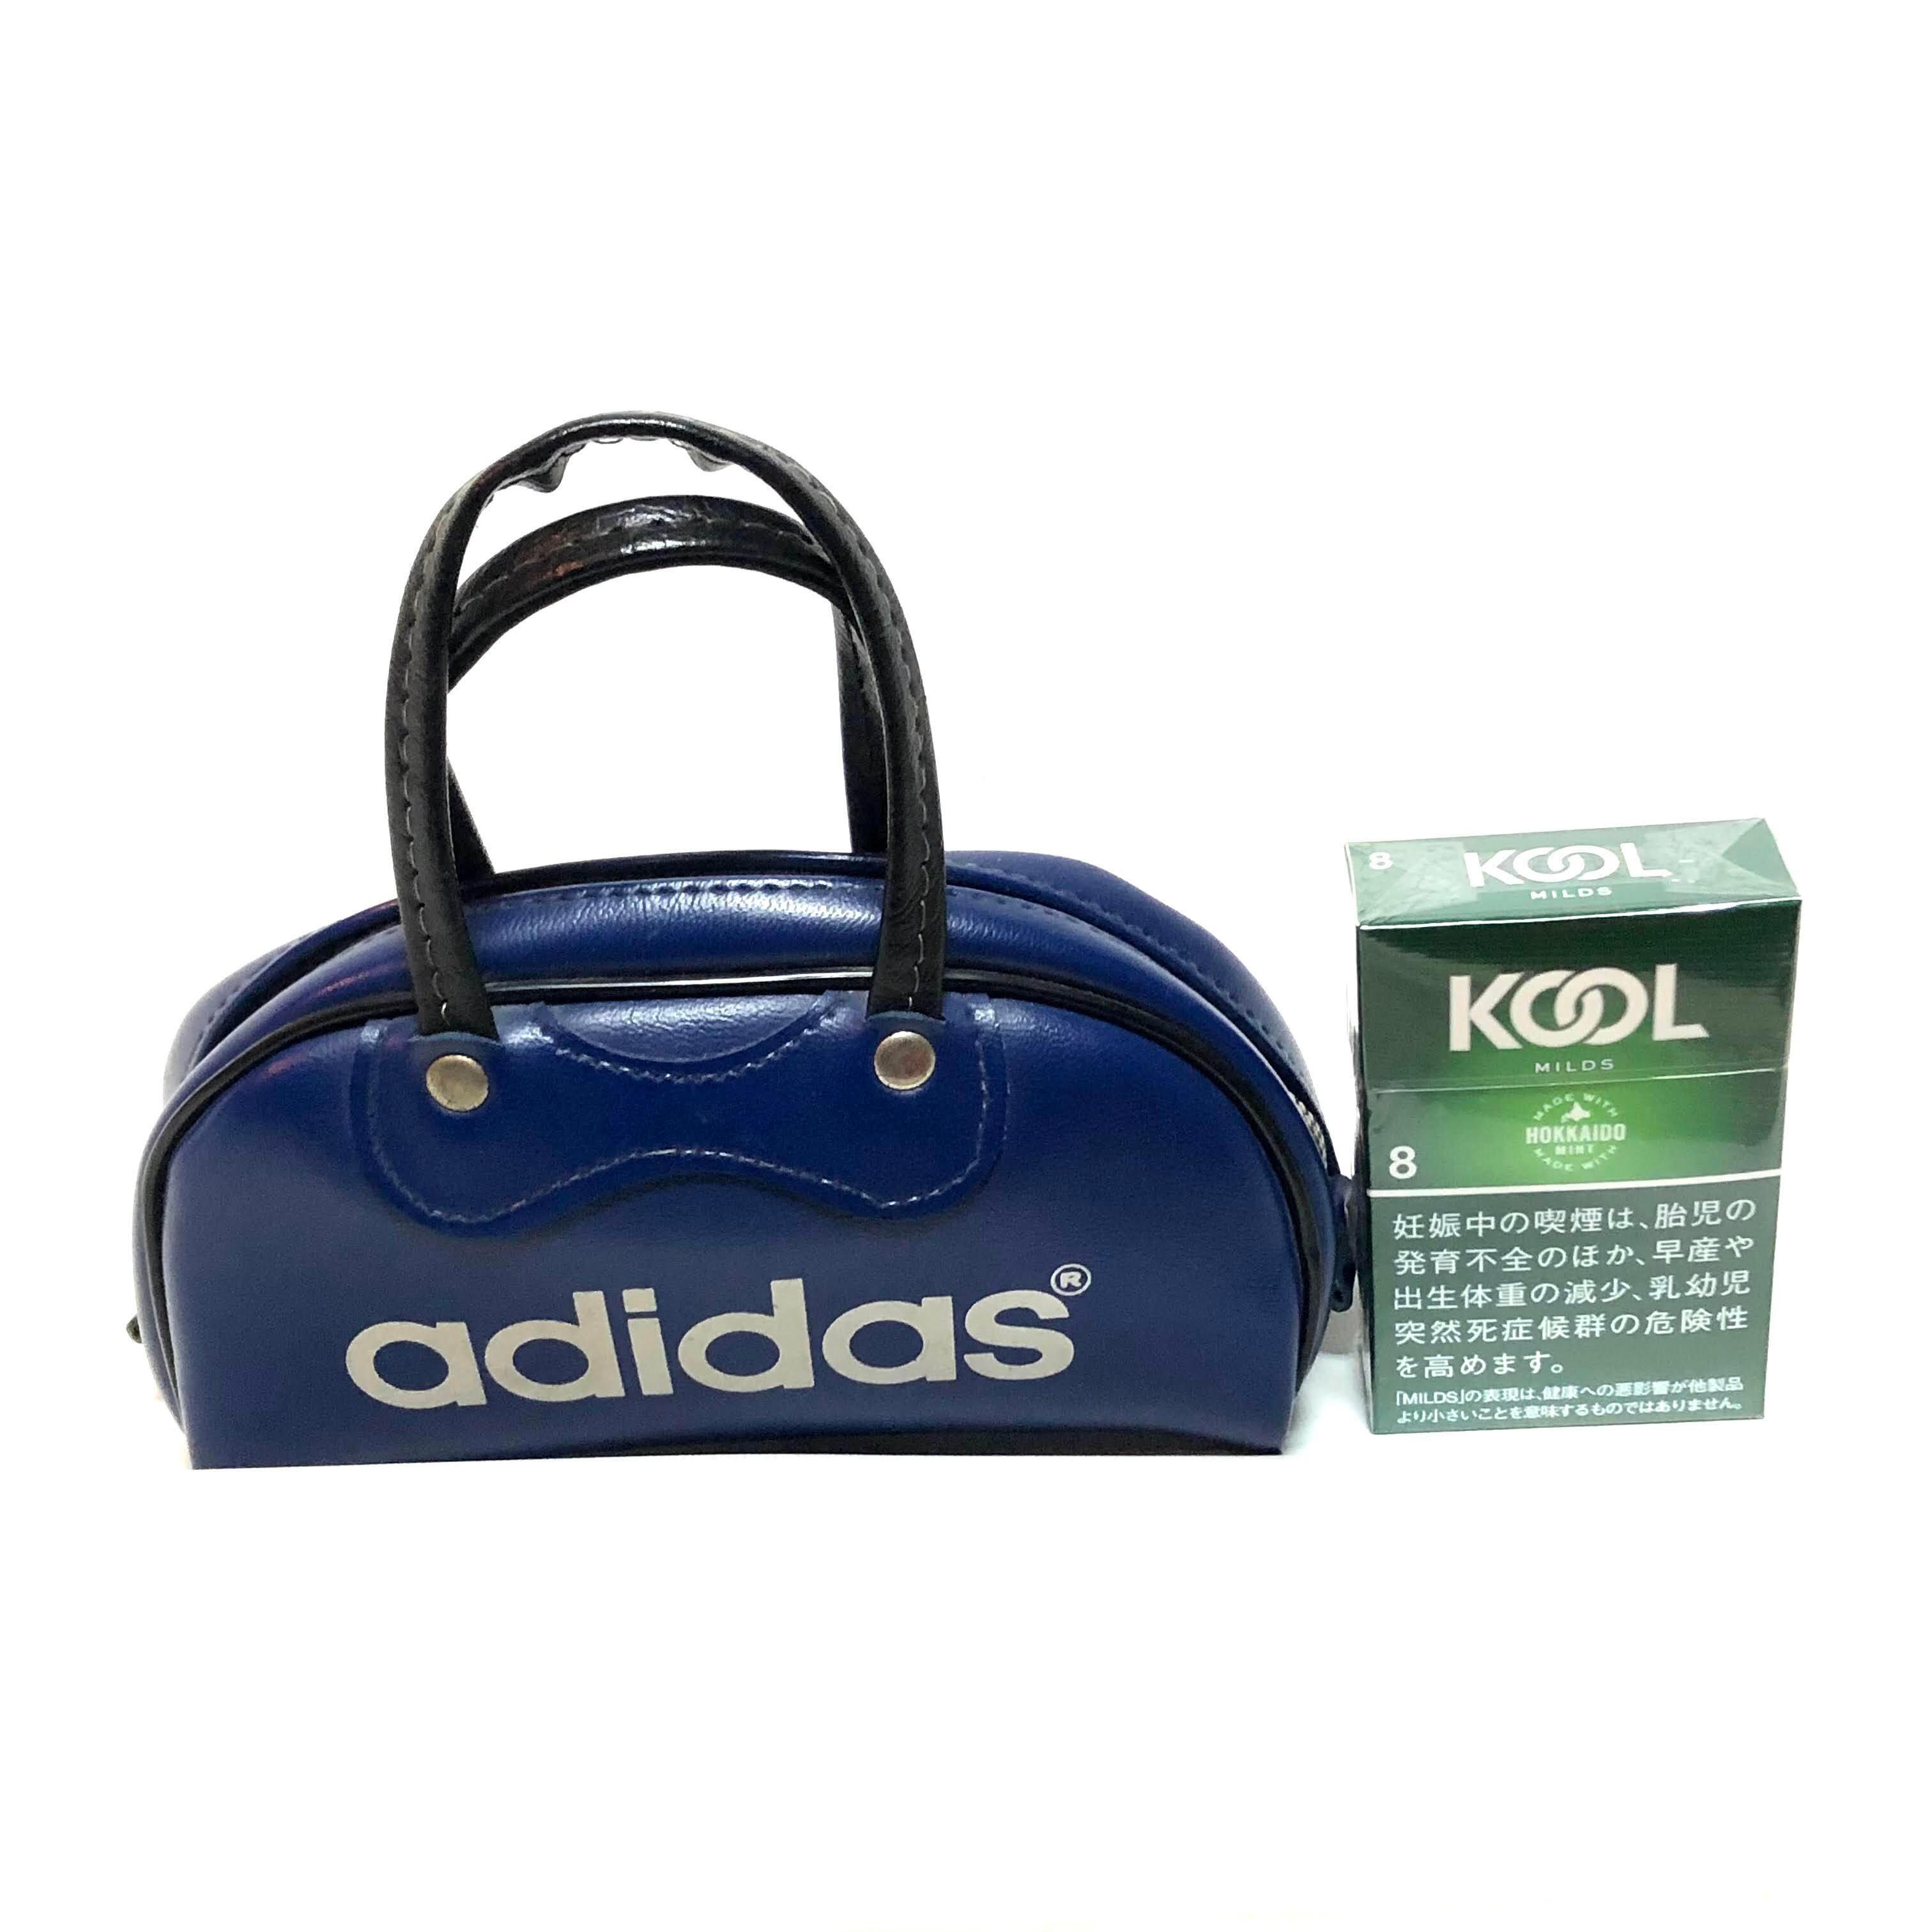 Adidas アディダス 小型ボストンバッグ ハンドバッグ 正規品スーパーsale 店内全品キャンペーン